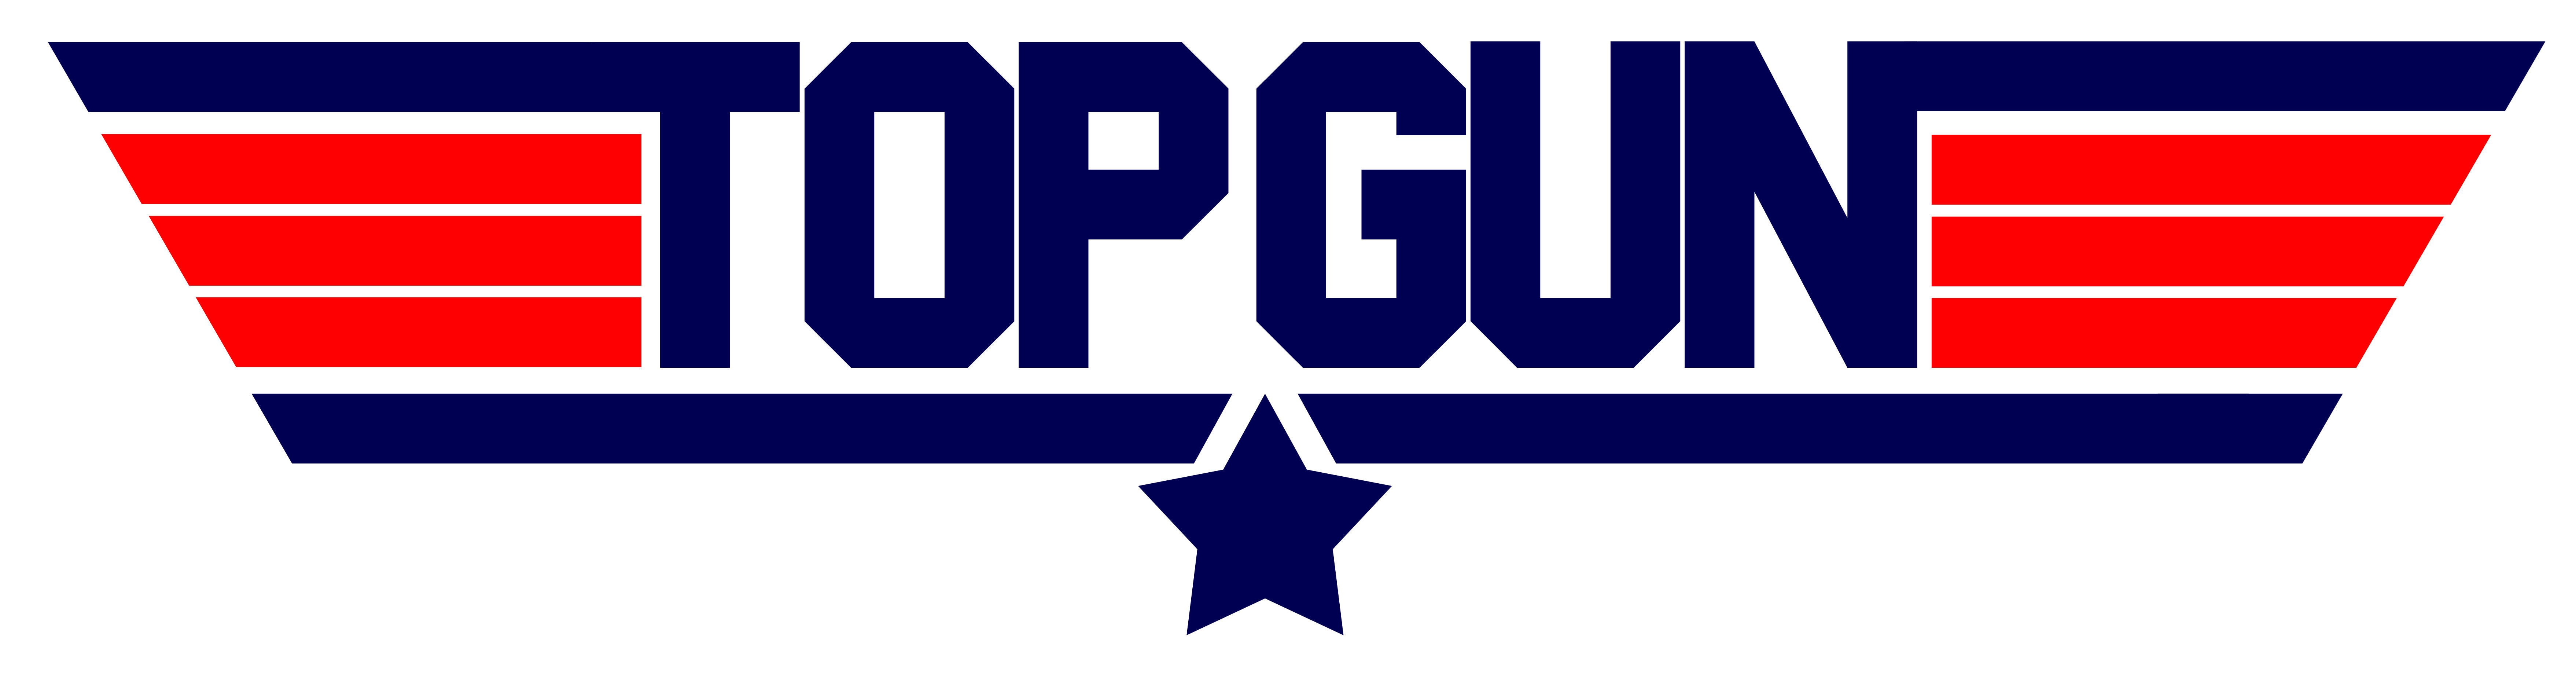 Top Gun Maverick Logo